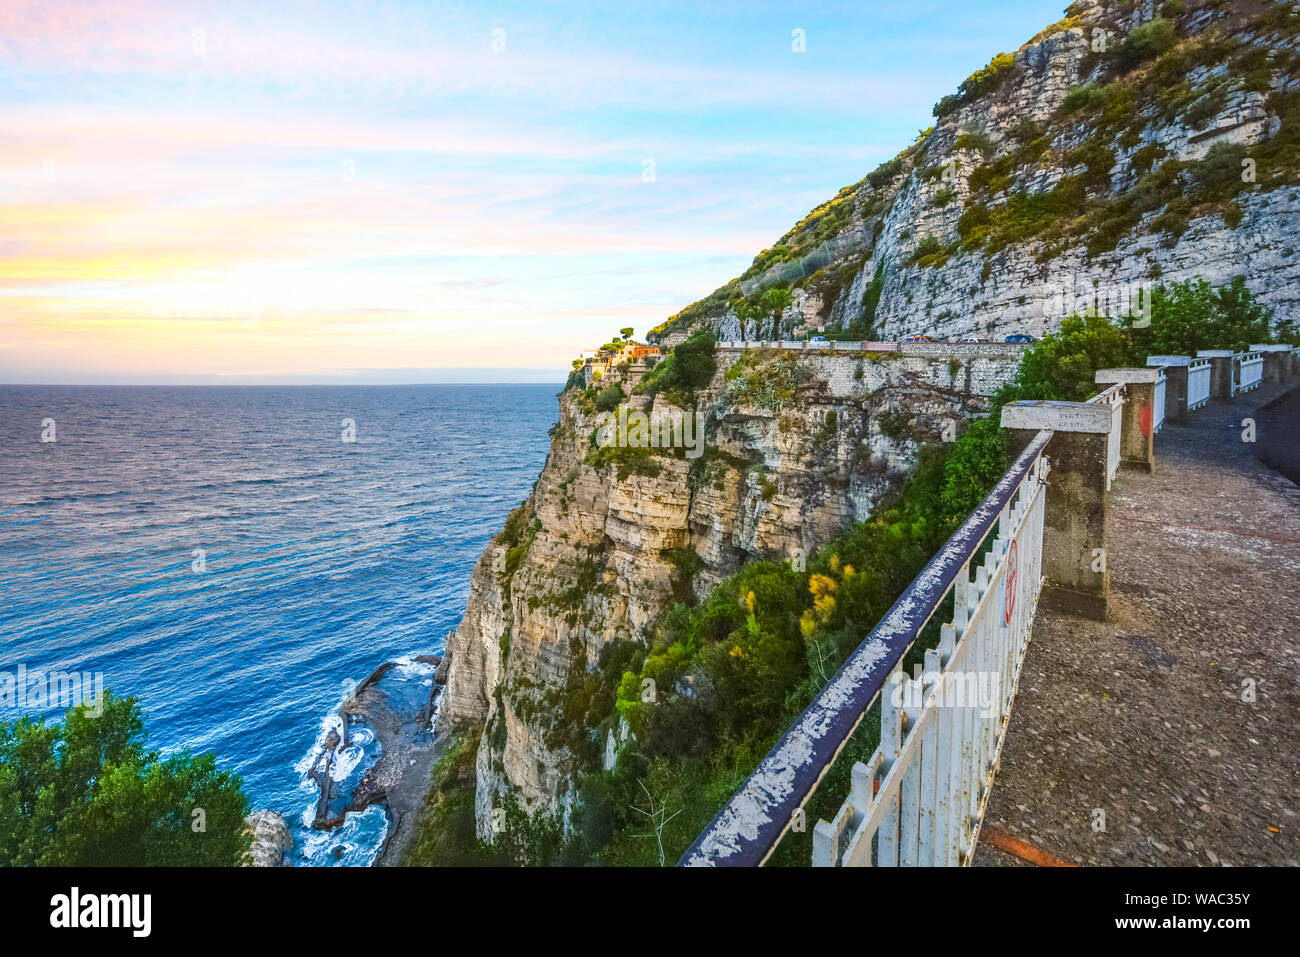 Blick vom Stillstand auf dem Weg an der Amalfi-Küste in der Nähe von Sorrent mit einer Luxus-Villa hoch oben auf einer Klippe mit dem Meer und Tide Pools unten Stockfoto